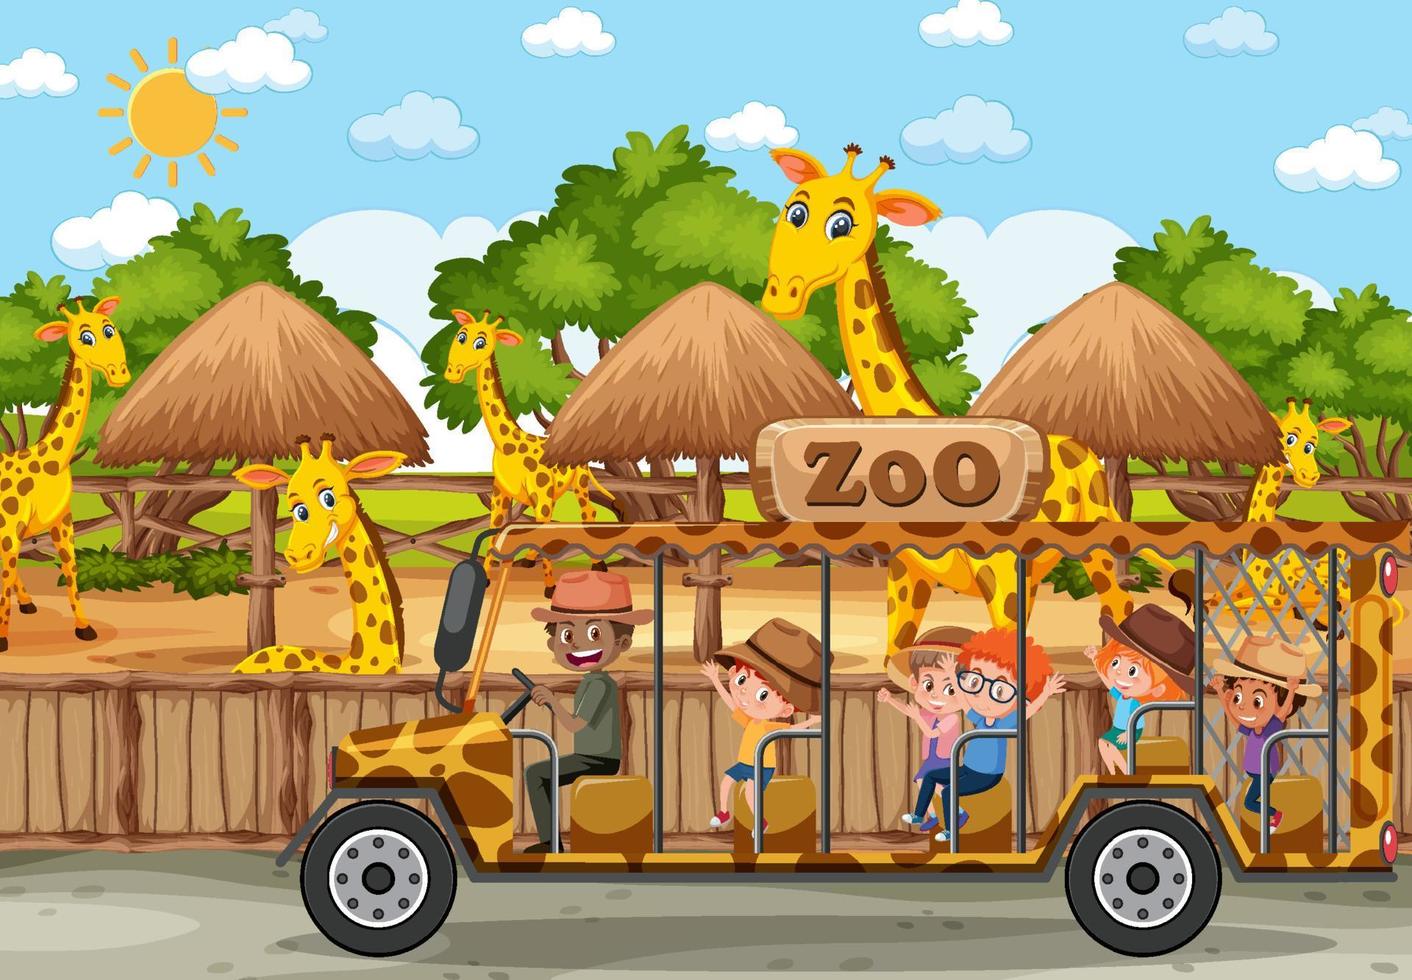 crianças em carro de turismo assistindo grupo de girafas na cena do zoológico vetor